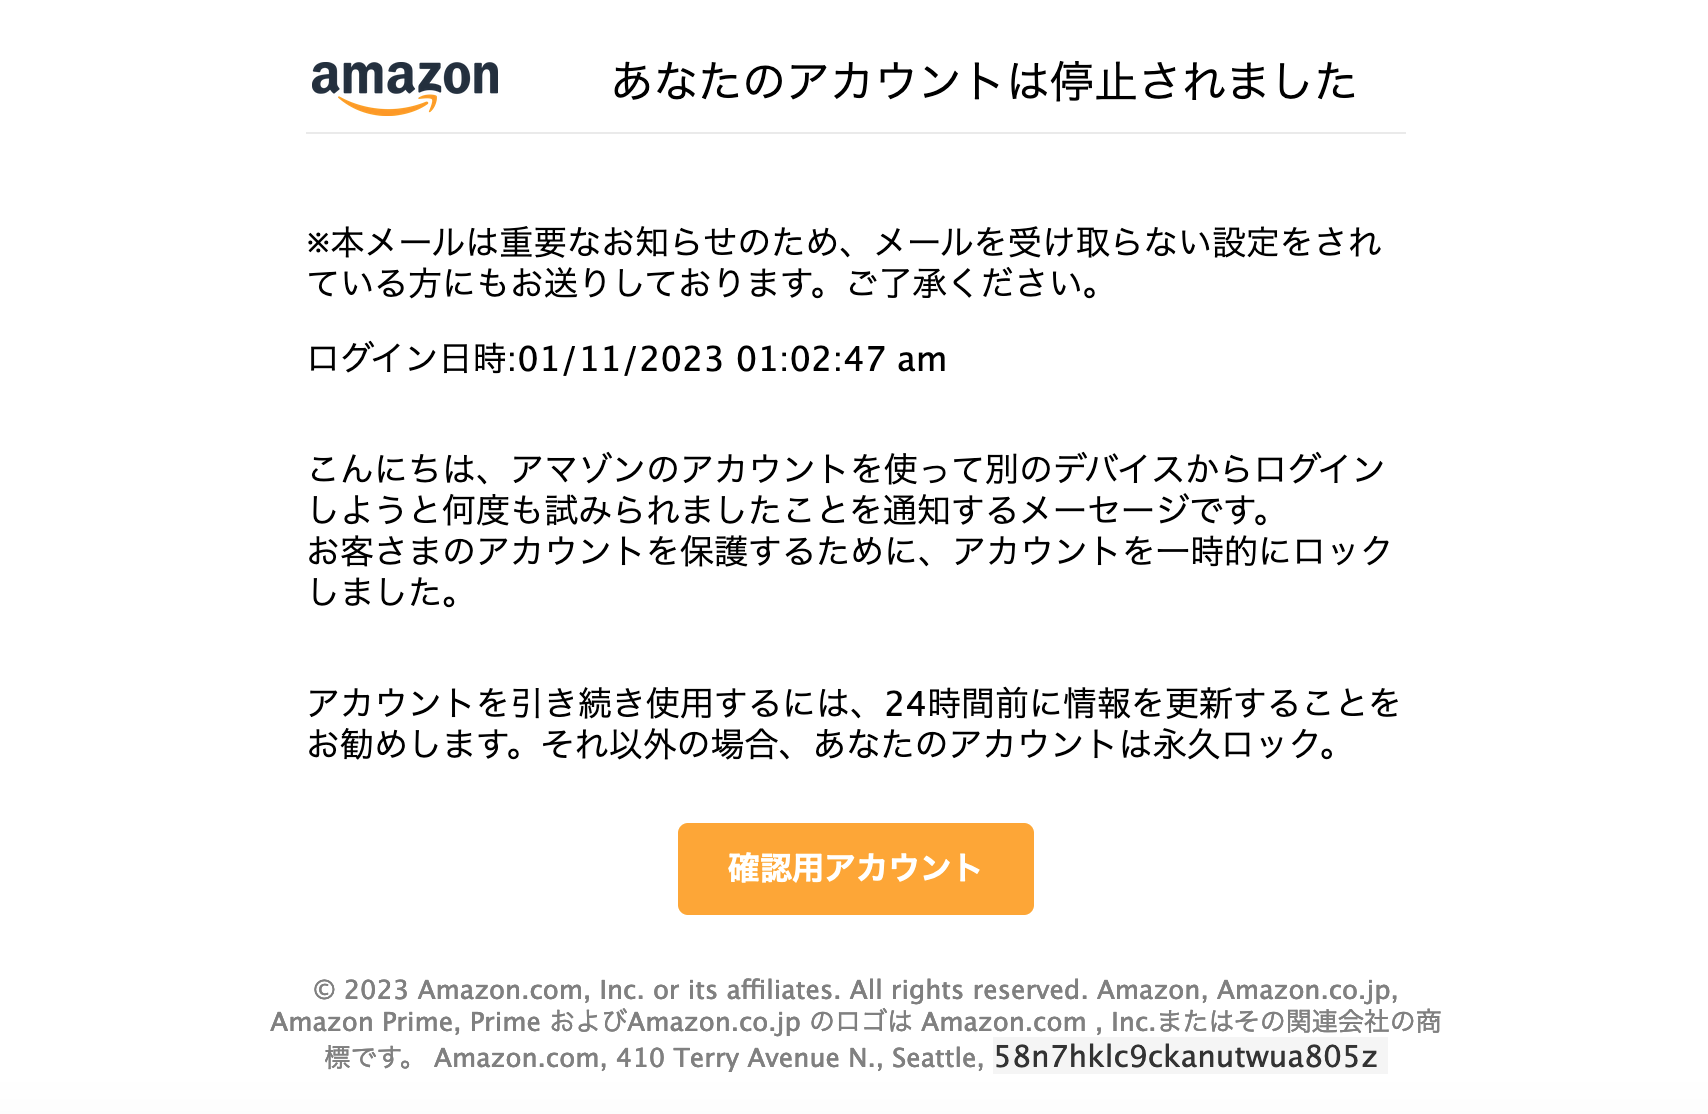 2023/1/11 5:20】Amazonを騙る詐欺メールに関する注意喚起 - 情報基盤 